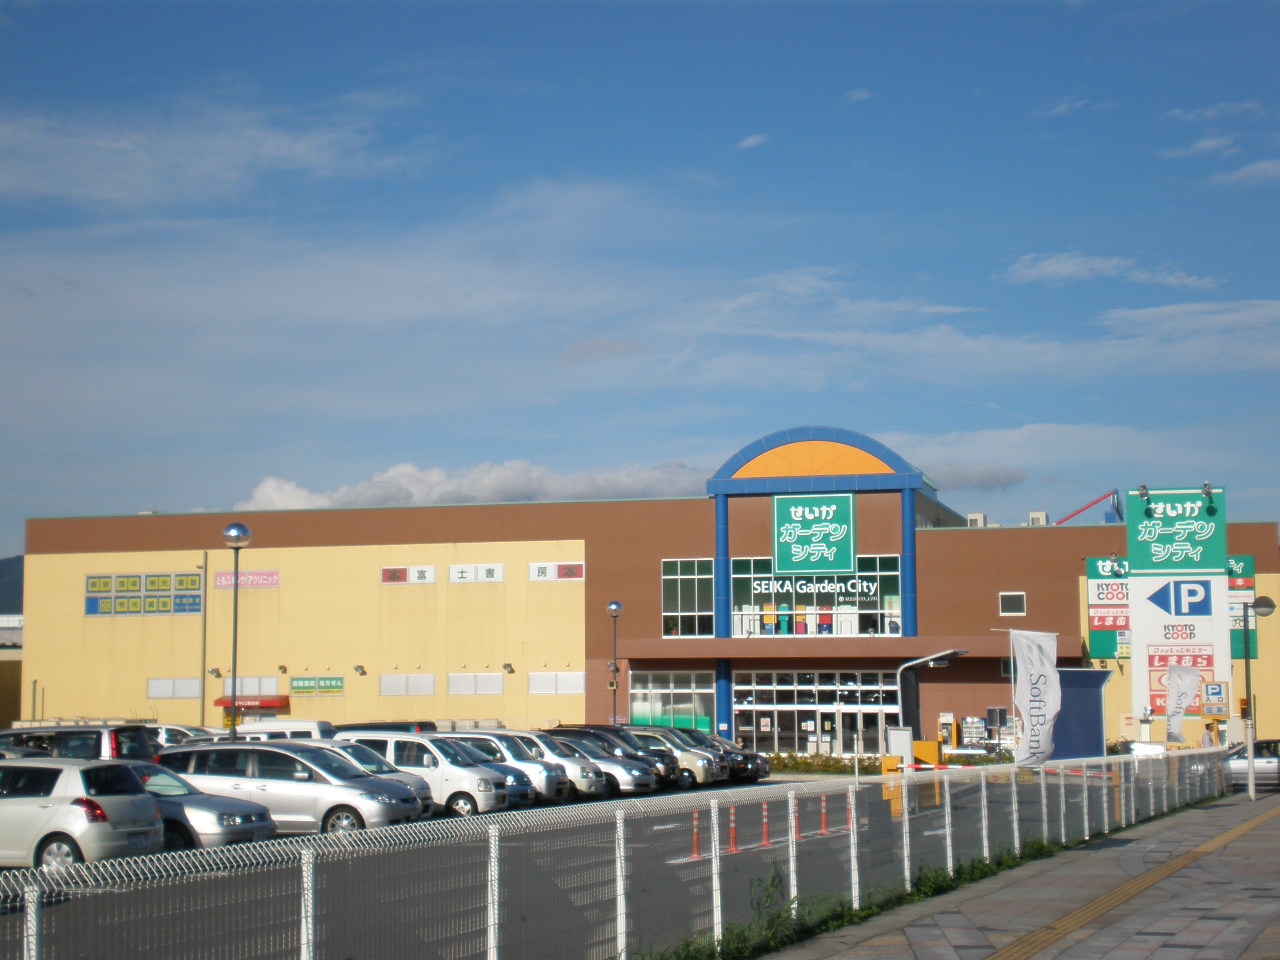 Shopping centre. 1246m until the outcome Garden City (shopping center)